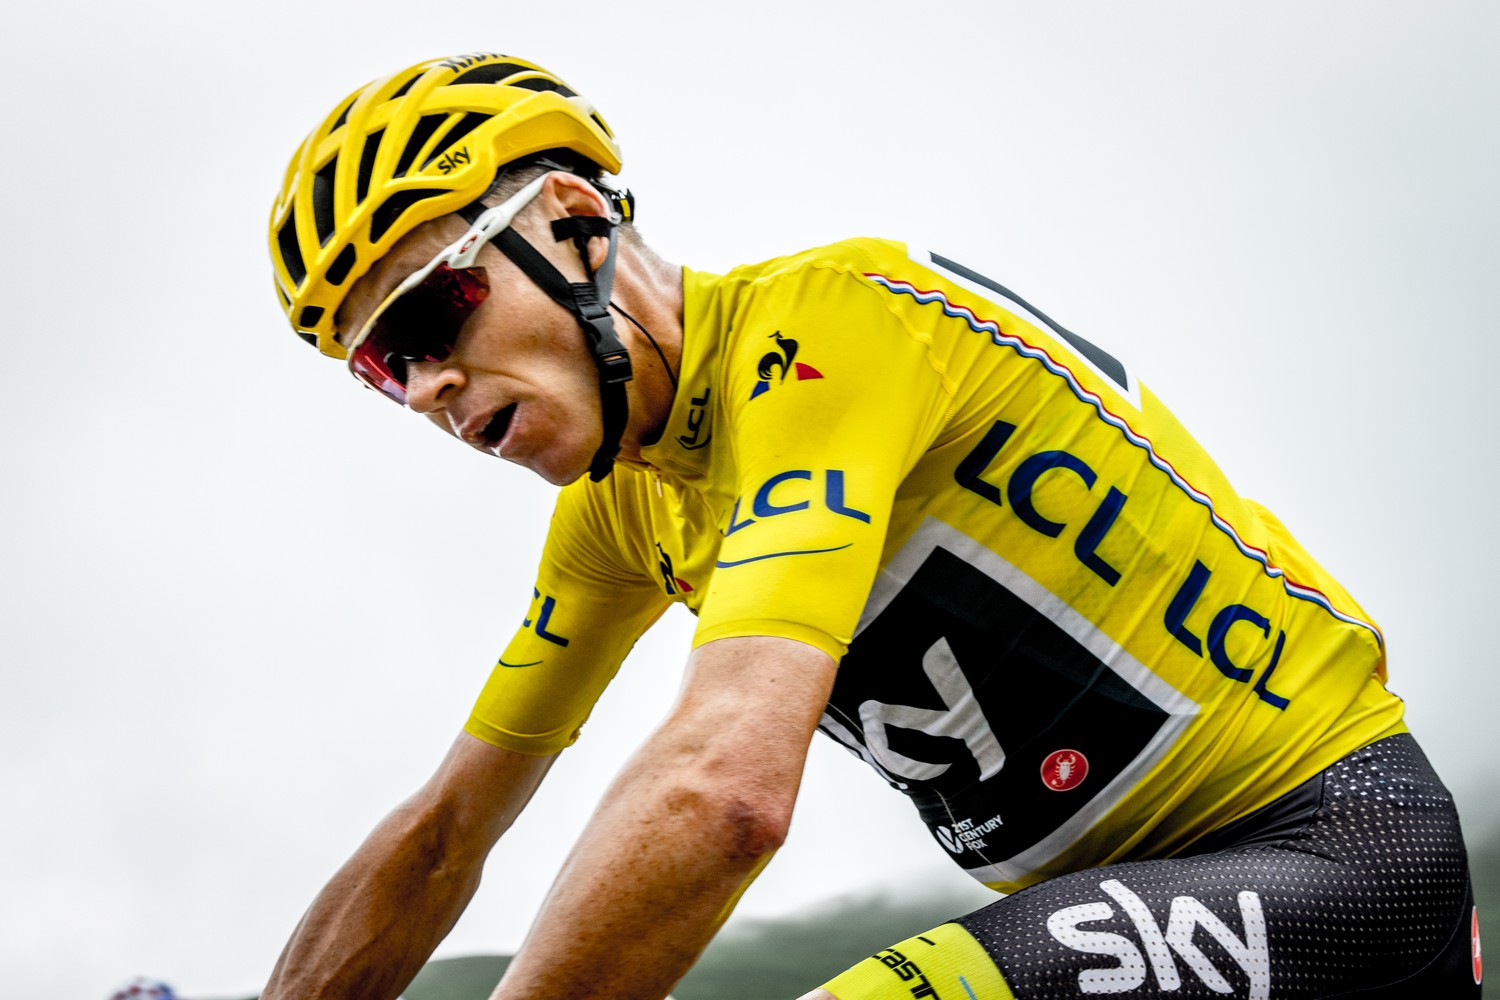 2017 Tour de France: Stage 12 - Col de Peyresourde